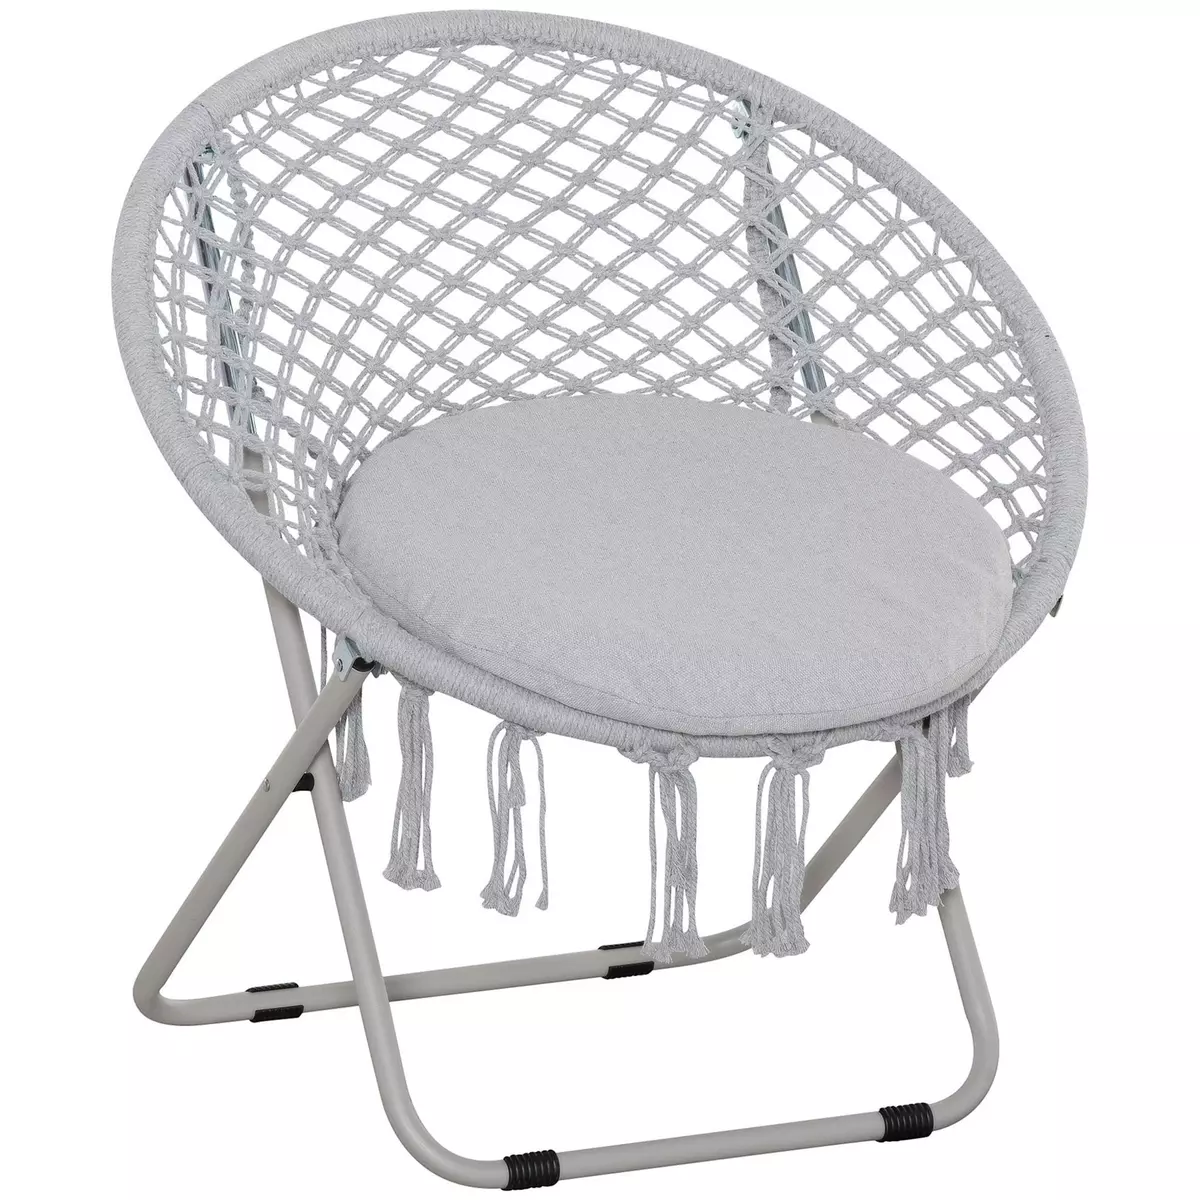 OUTSUNNY Loveuse fauteuil rond de jardin fauteuil lune papasan pliable grand confort macramé coton polyester gris